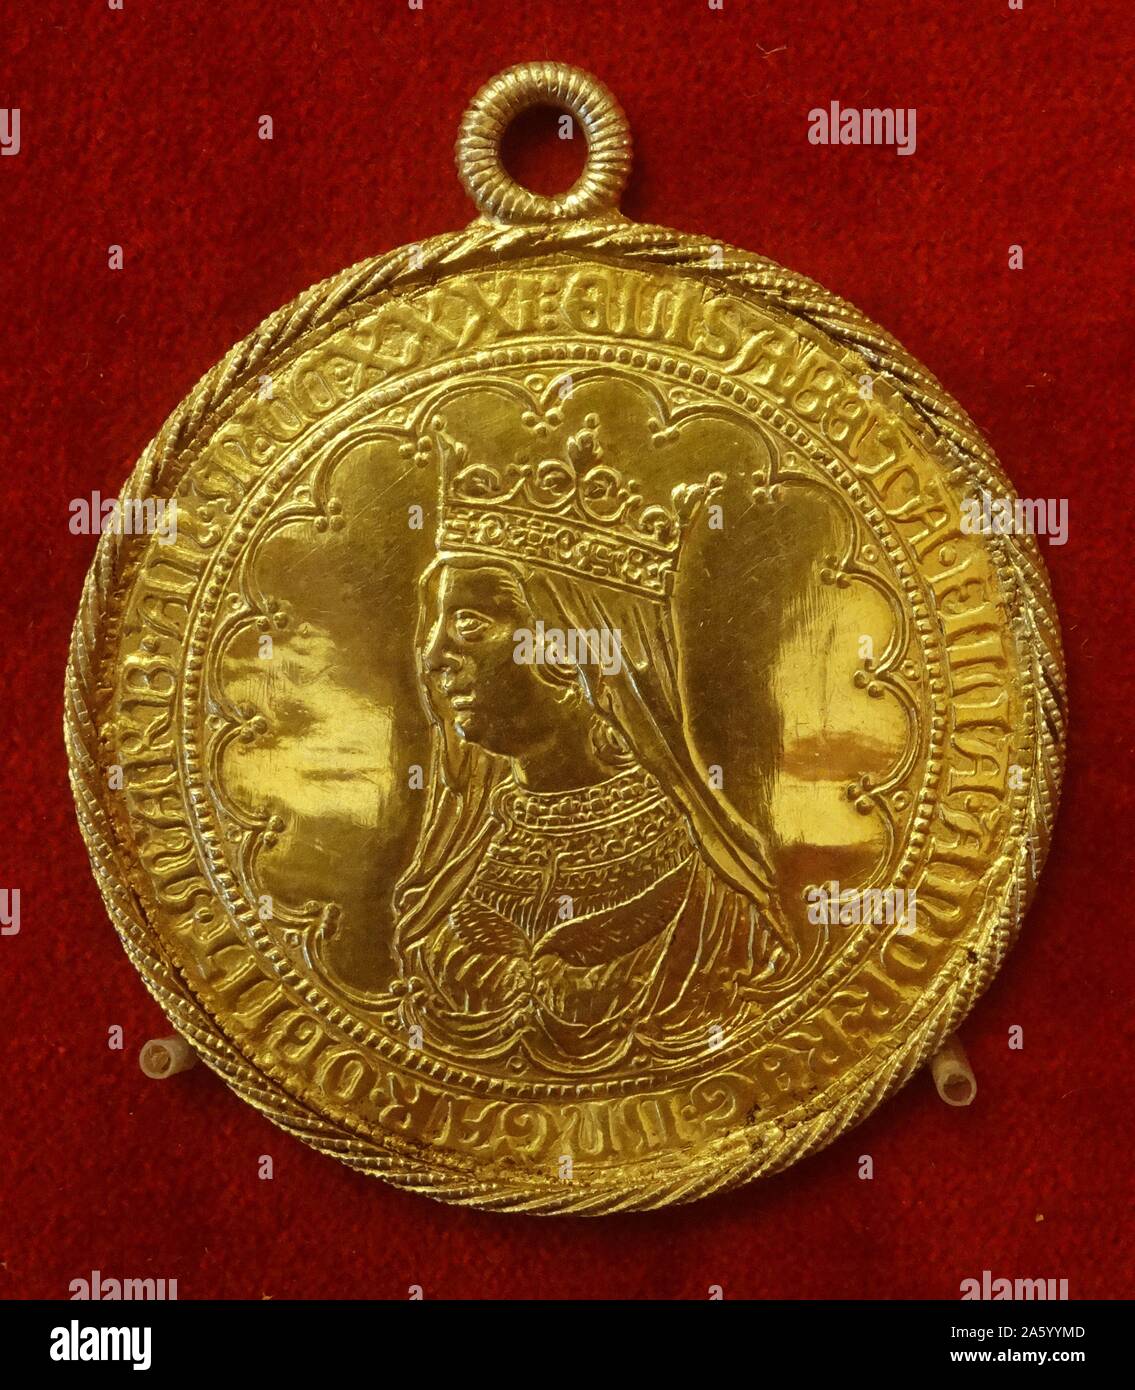 Münze mit Prinzessin Elisabeth von Ungarn (1207-1231) des Königreichs Ungarn, Landgravine von Thüringen und Deutschland. Datiert aus dem 16. Jahrhundert Stockfoto